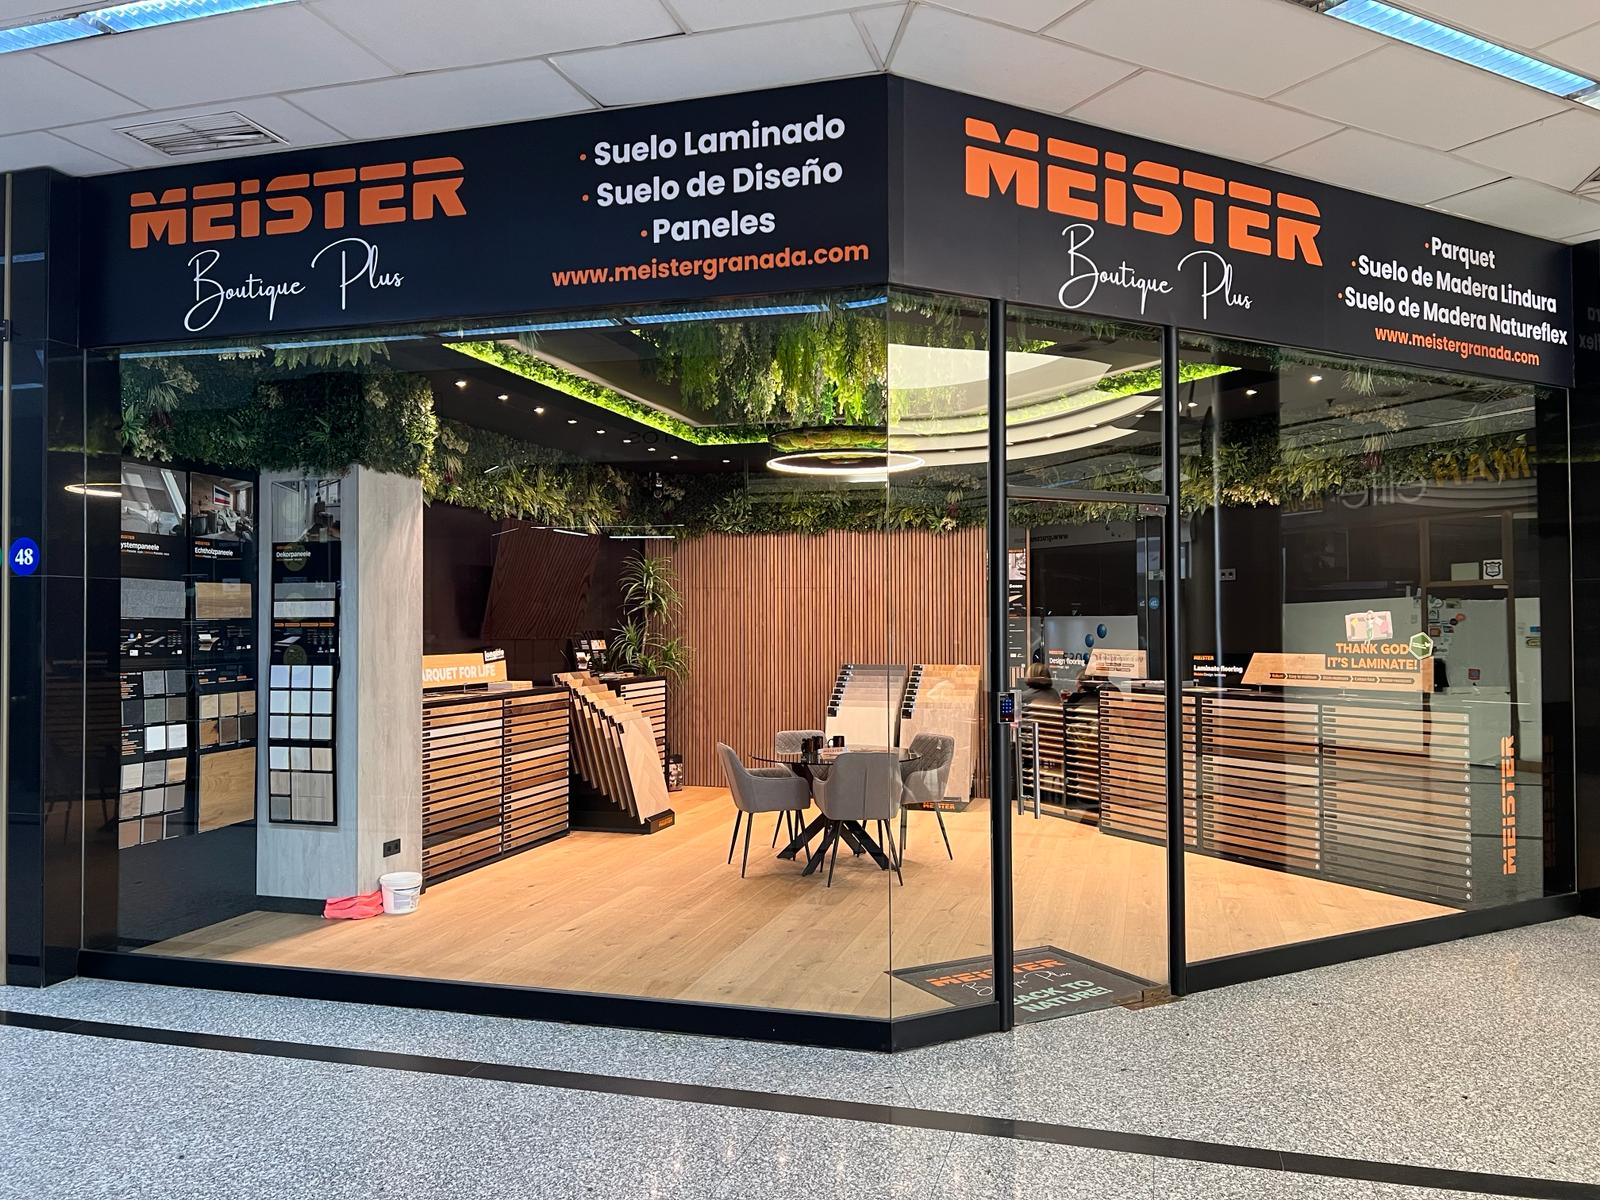 Bienvenidos a la Gran Apertura de Meister Boutique Plus en el Centro Comercial Neptuno